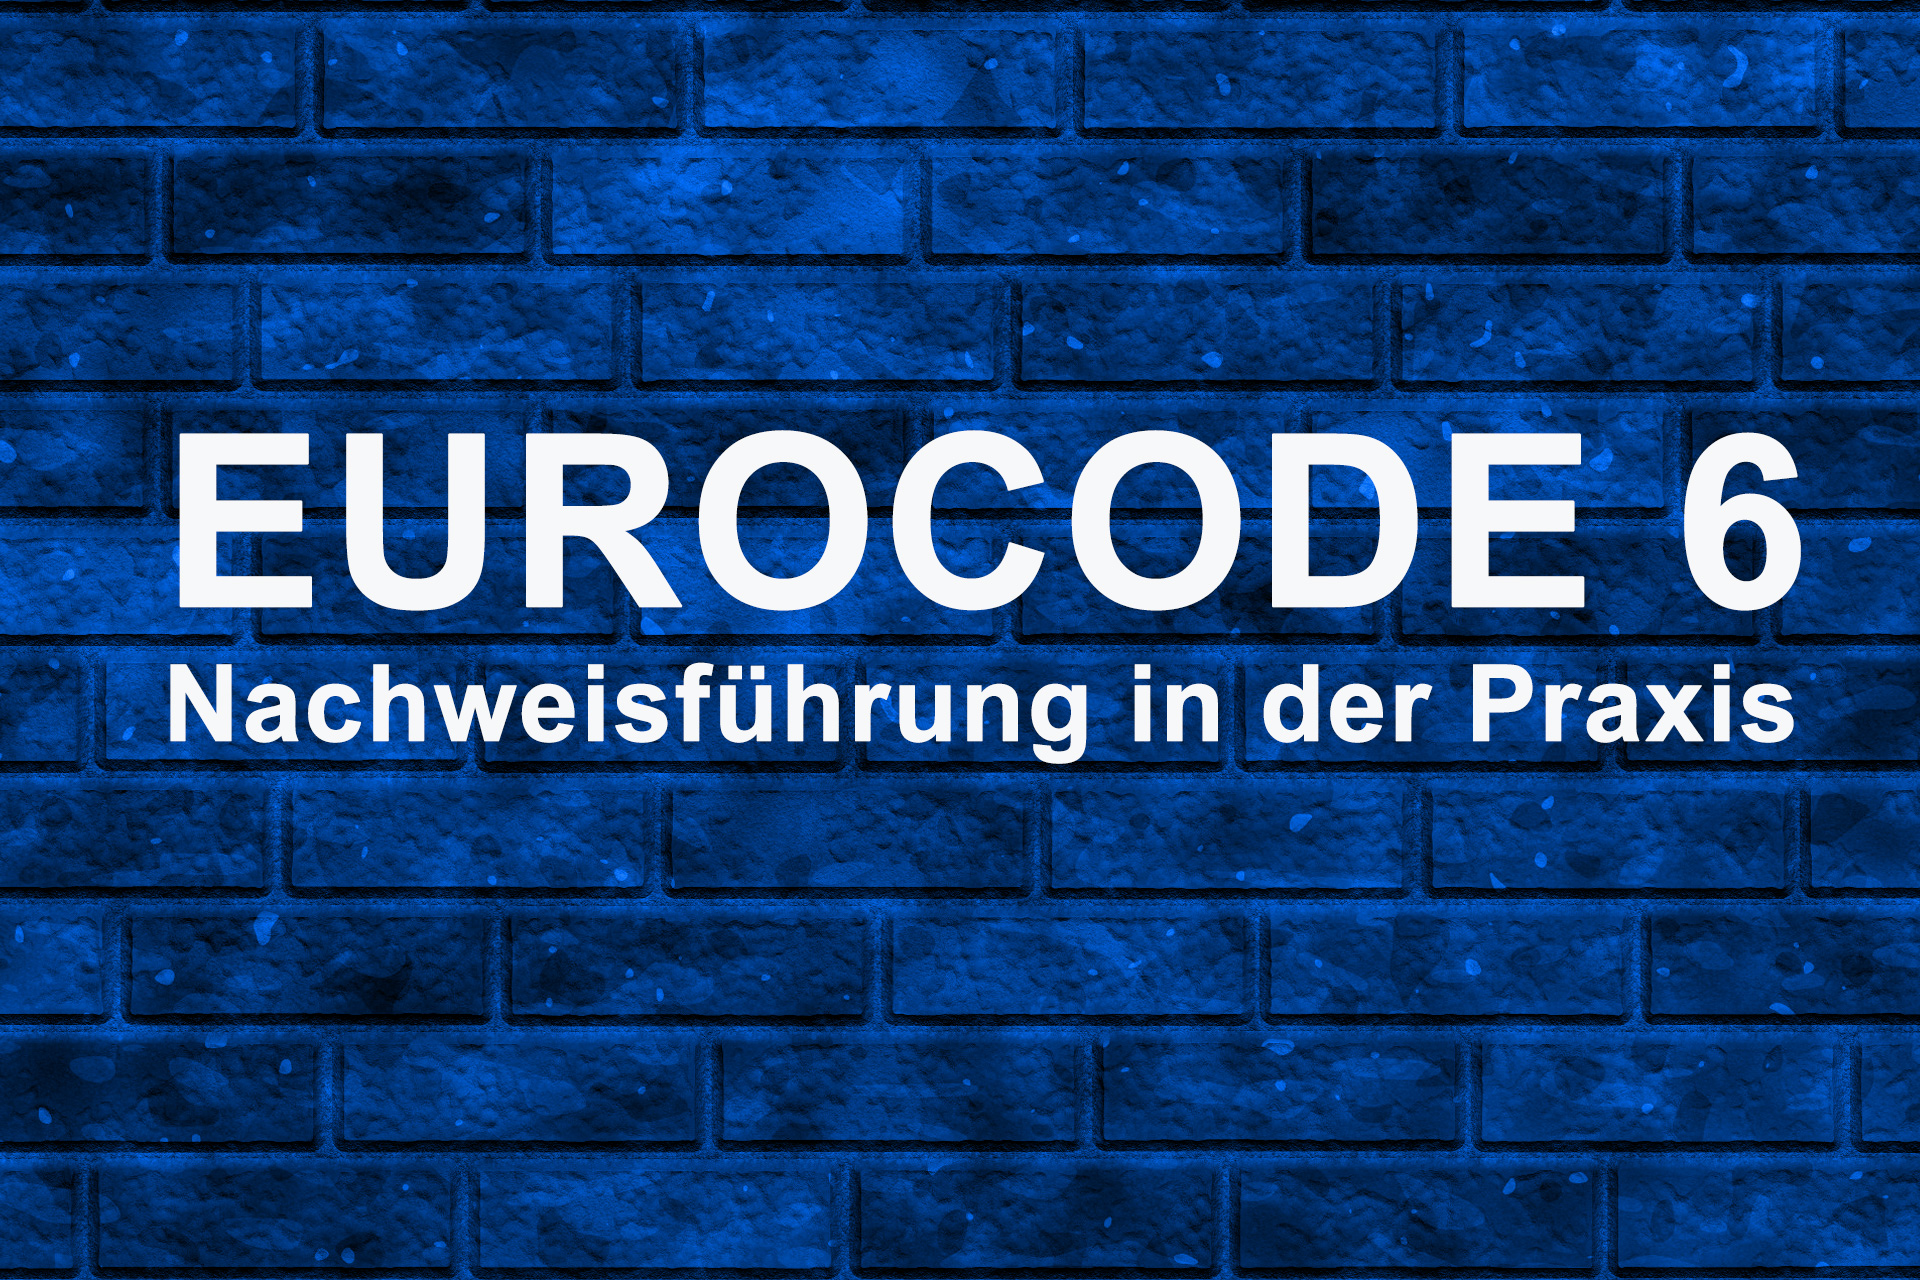 Eurocode 6: Nachweisführung in der Praxis